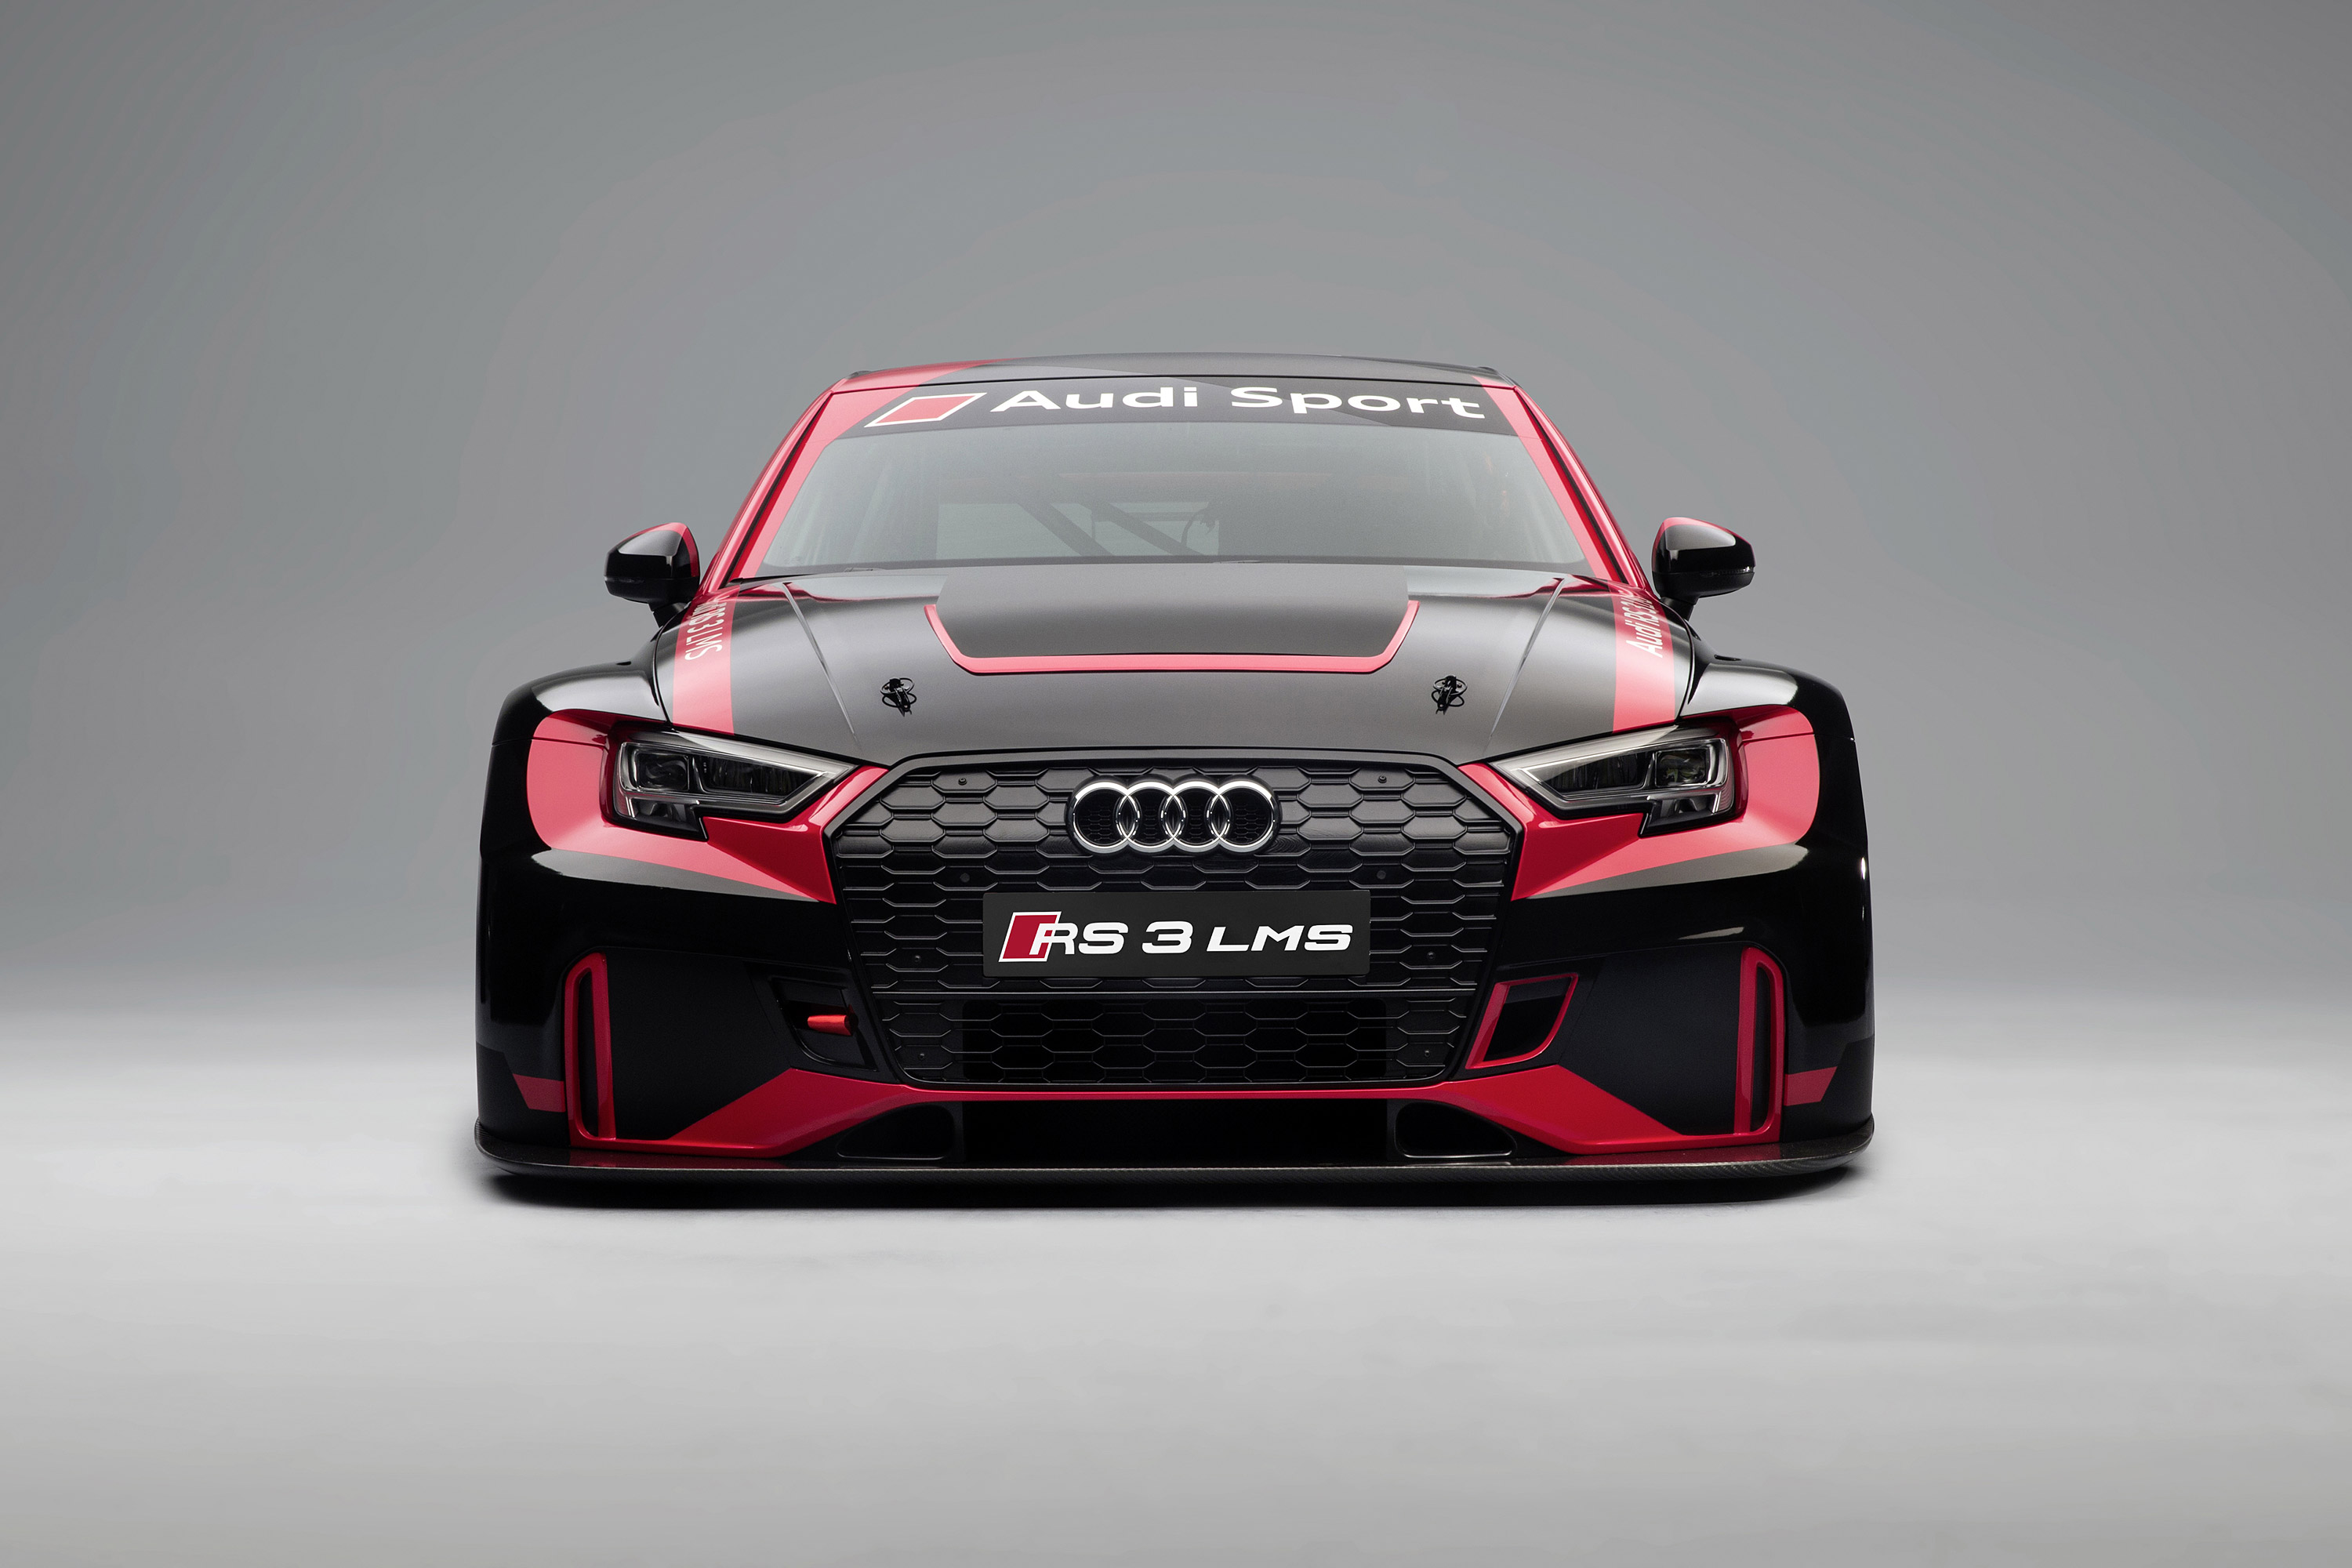  2017 Audi RS3 LMS Racecar Wallpaper.